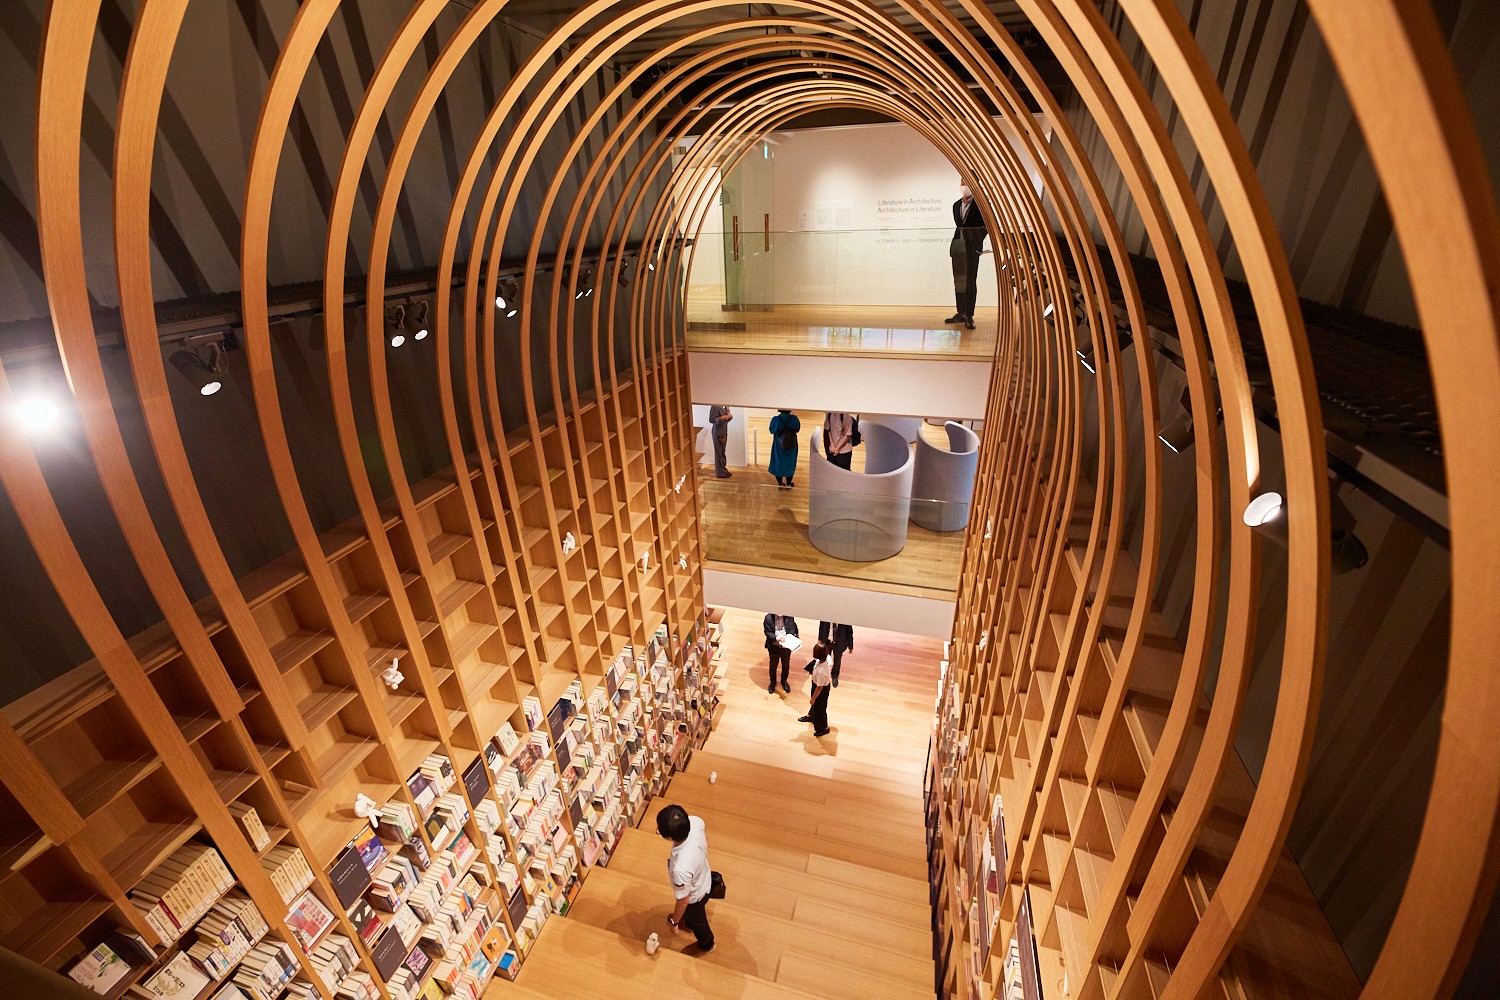  Haruki Murakami library 